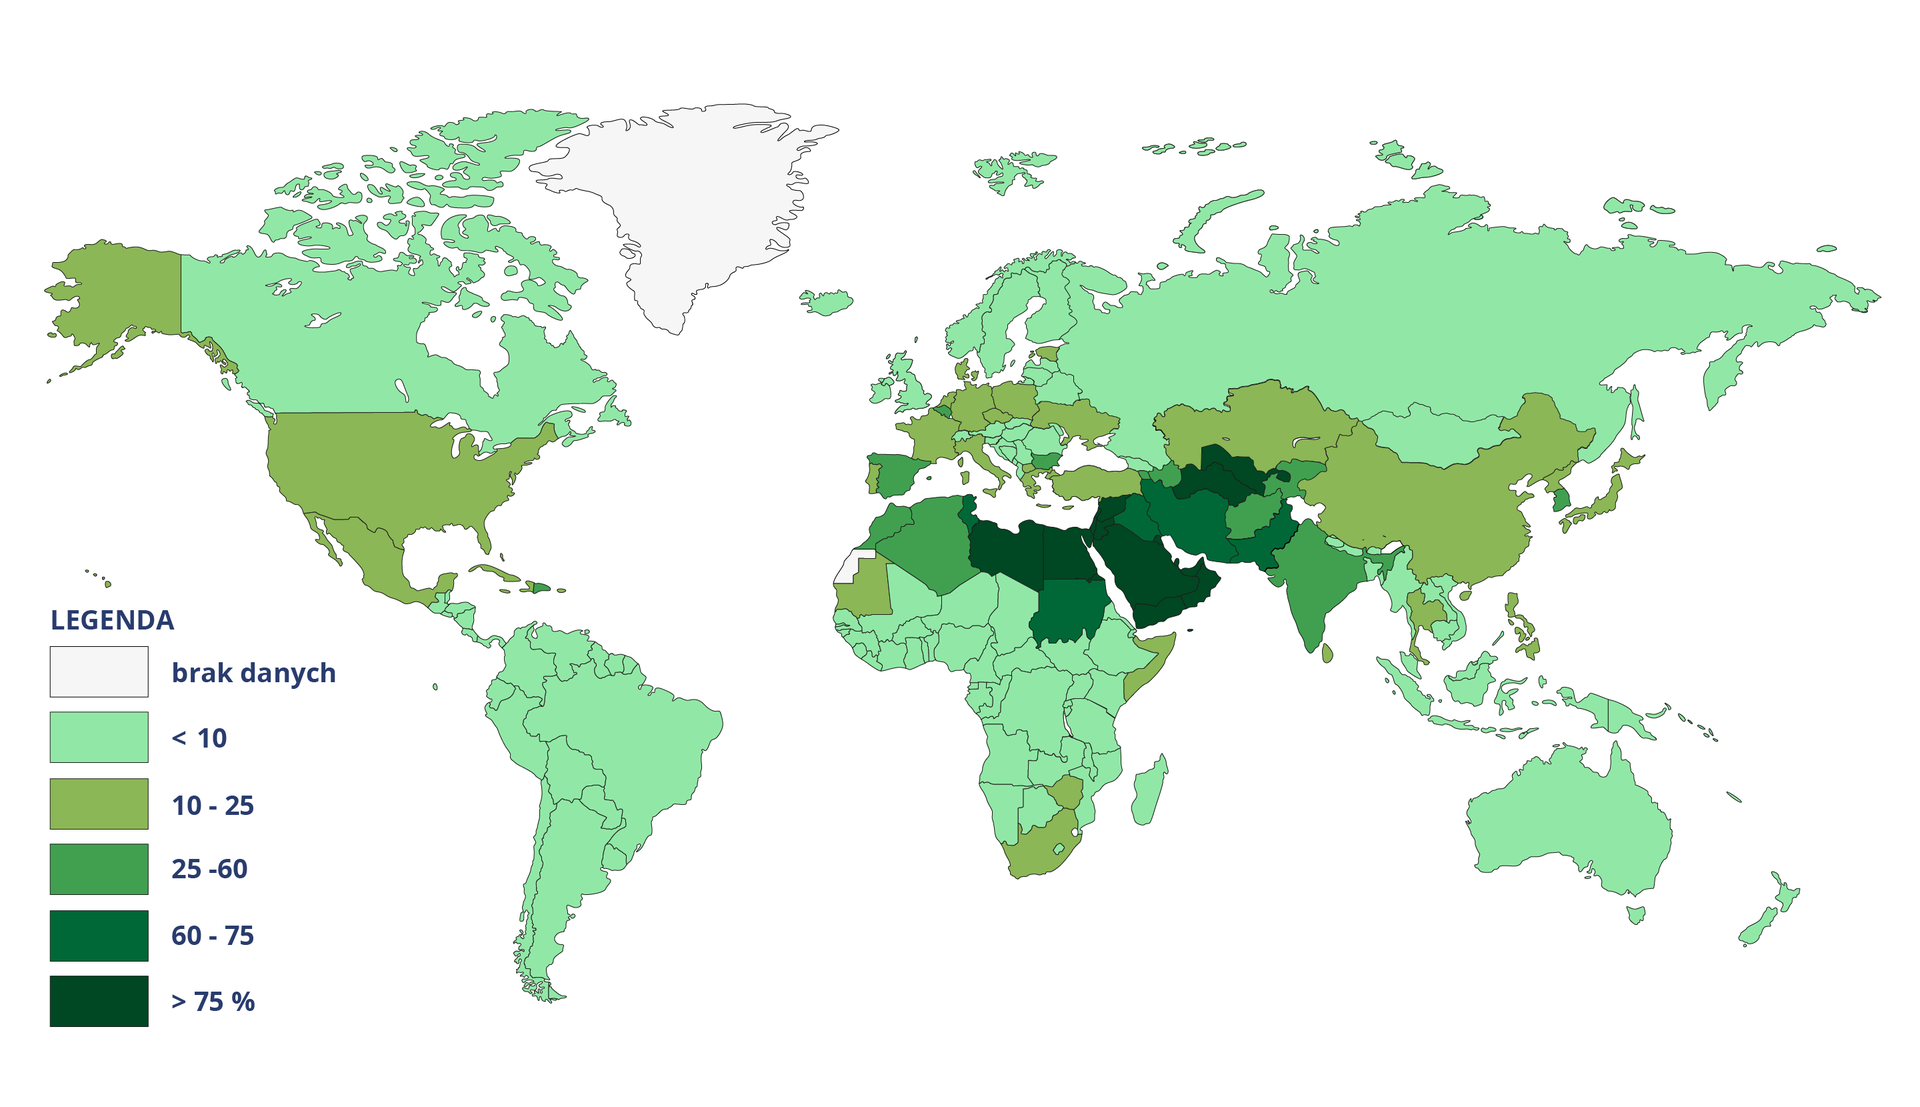 Na mapie świata zaznaczono wykorzystanie odnawialnych zasobów wód w procentach. Powyżej 75 procent: północna część Afryki - Libia, Egipt, Półwysep Arabski, Syria, Uzbekistan, Turkmenistan. W przedziale od 60 do 75% jest Sudan, Iran, Irak, Pakistan. W przedziale od 25 do 60%: Maroko, Algieria, Indie, Afganistan, Kirgistan, Tadżykistan, Azerbejdżan, Korea Południowa, Armenia, Bułgaria, Belgia, Hiszpania. W przedziale od 10 do 25% jest USA, Meksyk, Karaiby, Mauretania, RPA, Zimbabwe, Somalia, Turcja, Ukraina, Polska, Czechy, Estonia, Niemcy, Włochy, Holandia, Francja, Dania, Grecja, Albania, Kazachstan, Chiny, Tajlandia, Filipiny, Japonia. Korea Północna. W pozostałych krajach poniżej 10%.        